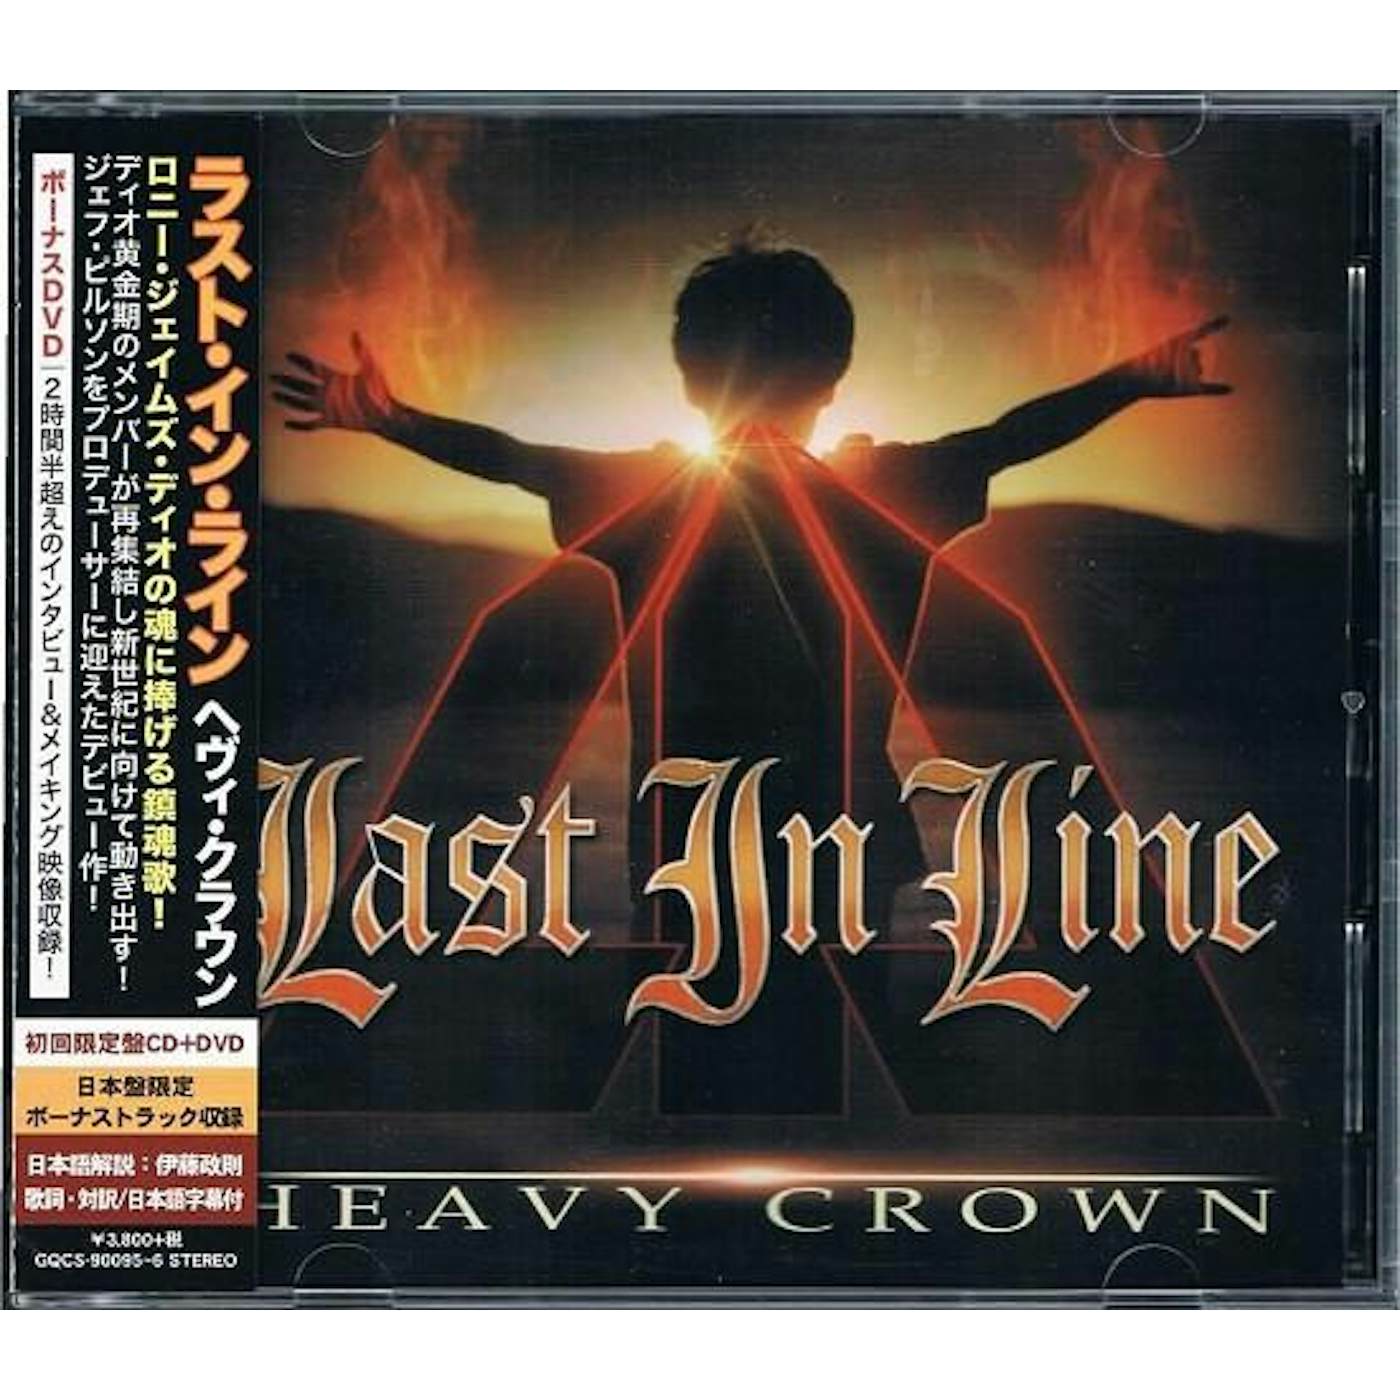 Last in Line HEAVY CROWN CD